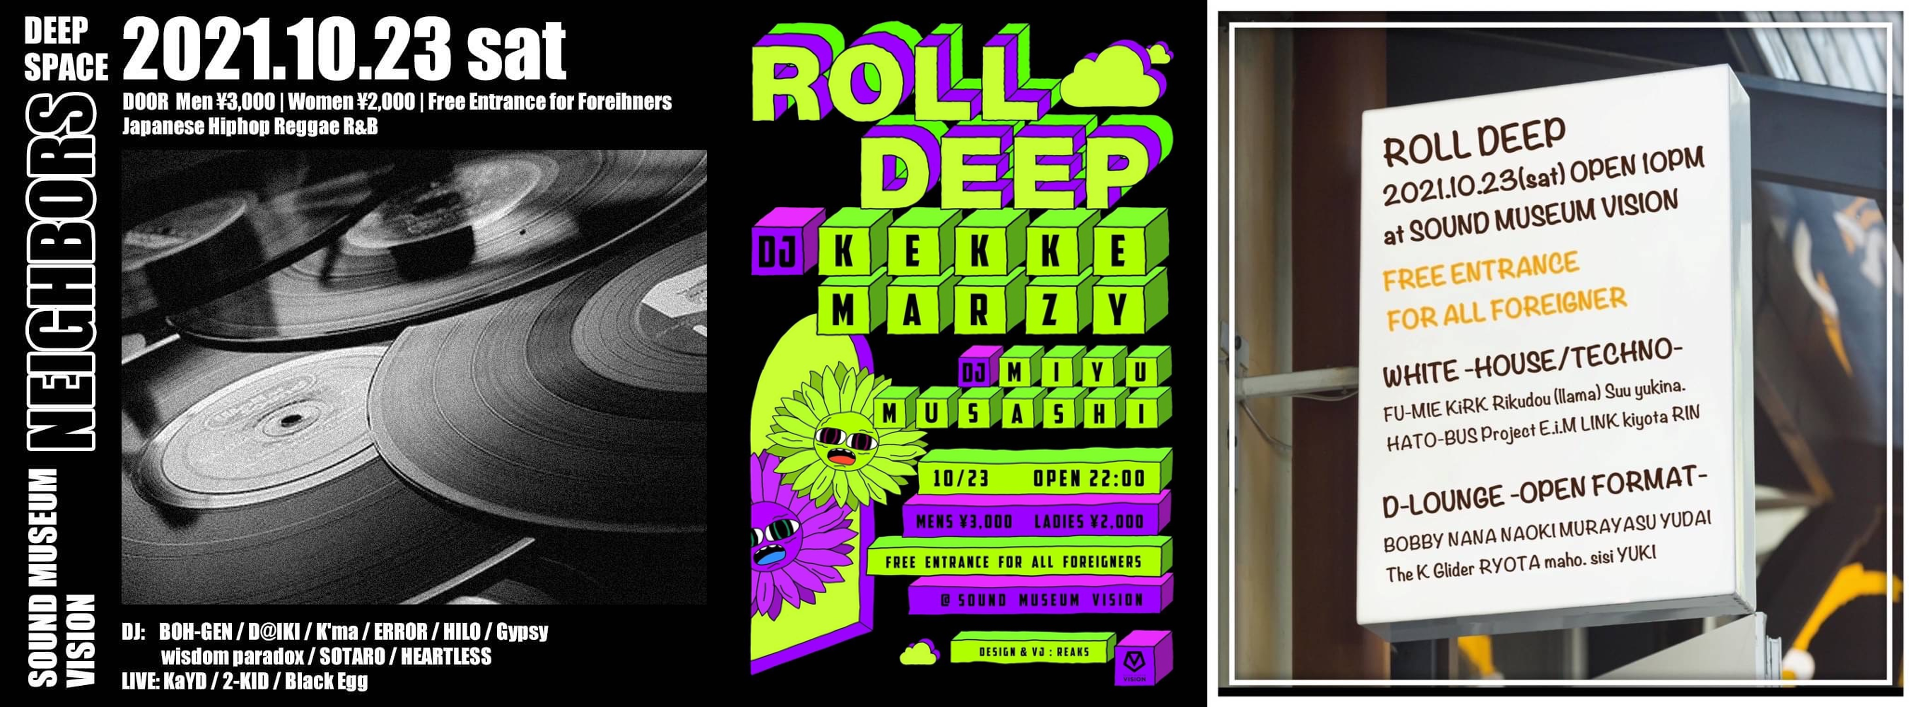 今夜10/23(土) 『ROLL DEEP -DJ KEKKE BIRTHDAY-』 @渋谷VISION